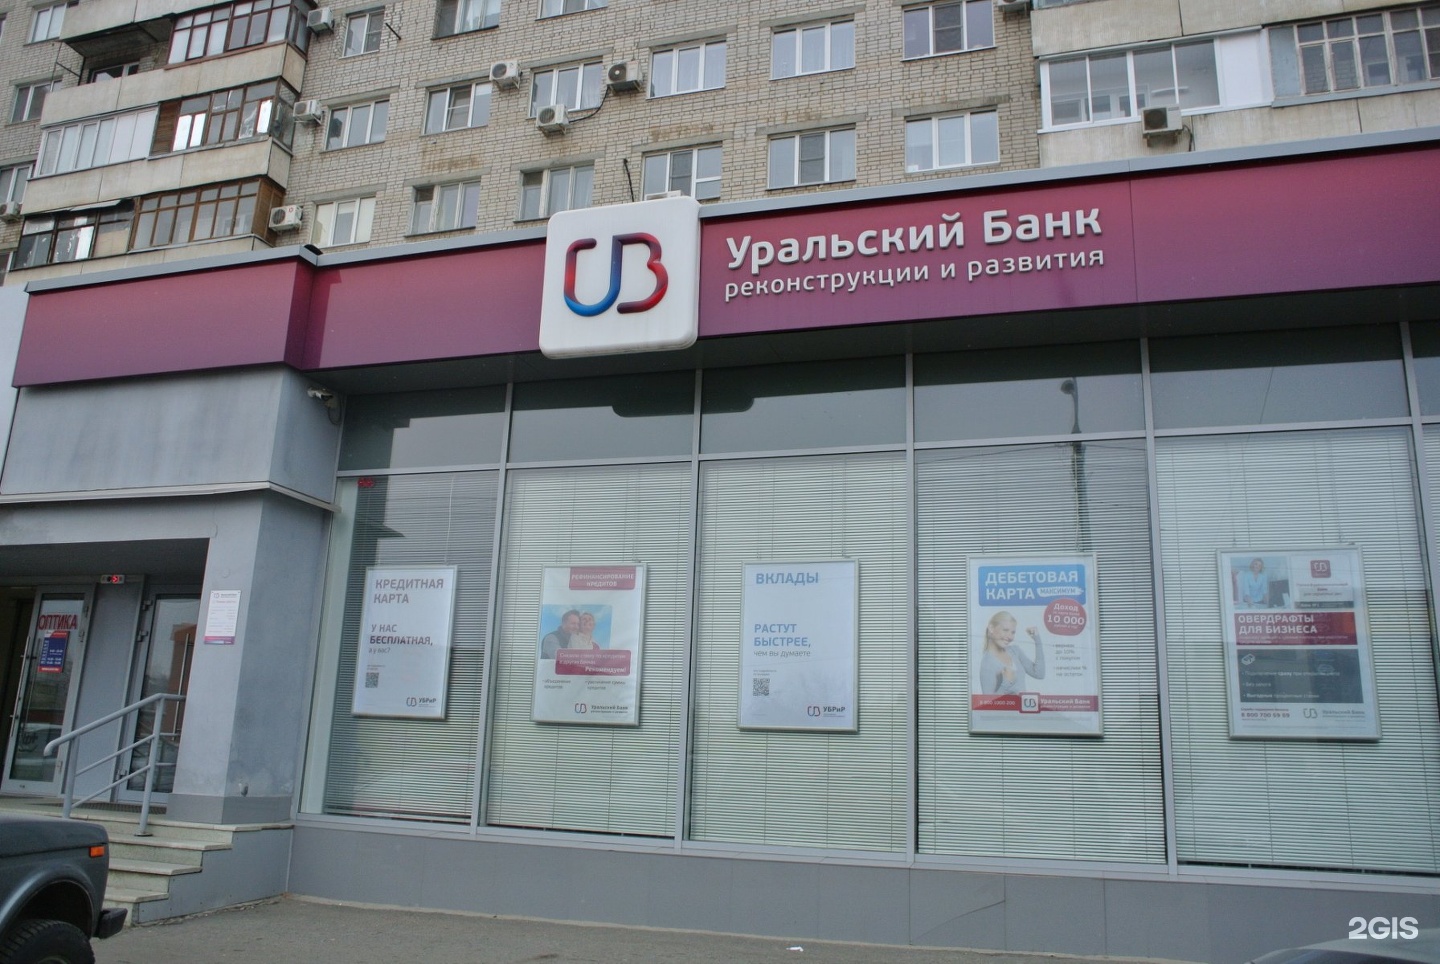 Рокоссовского 42 Волгоград Уральский банк